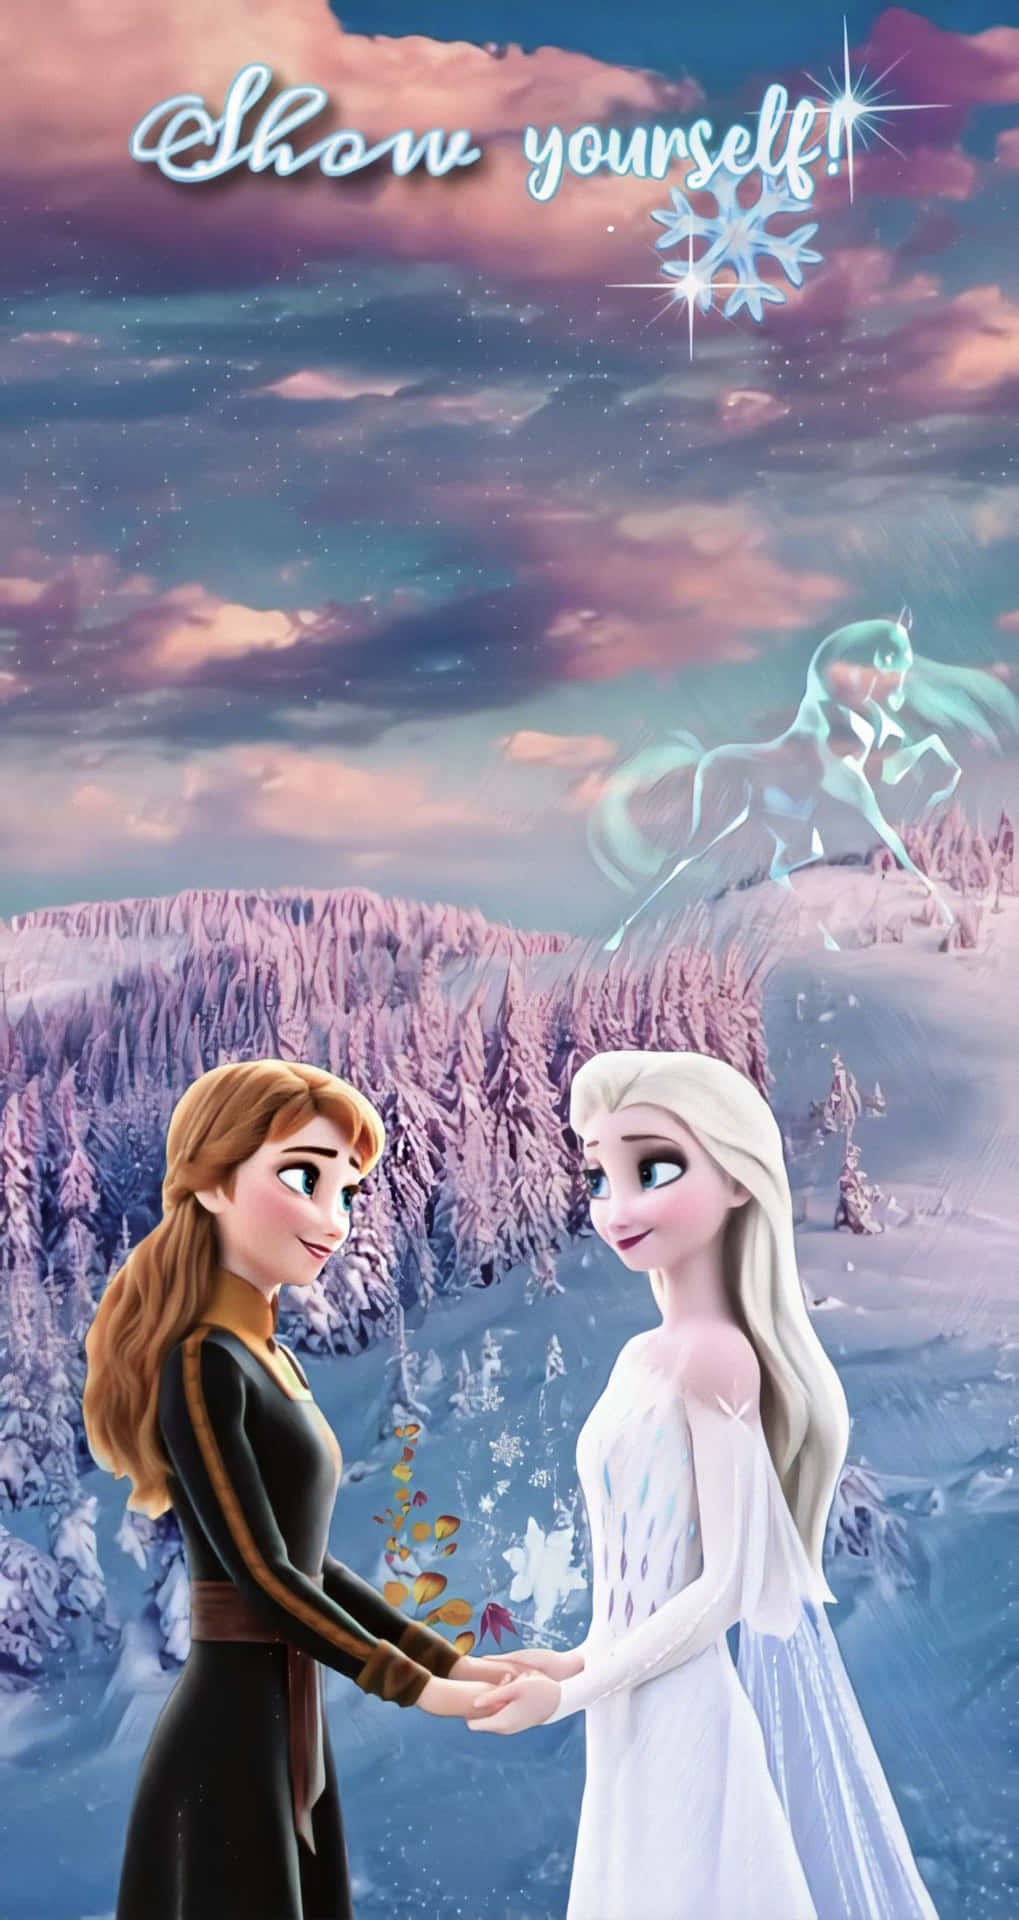 Imágenesde Frozen 2